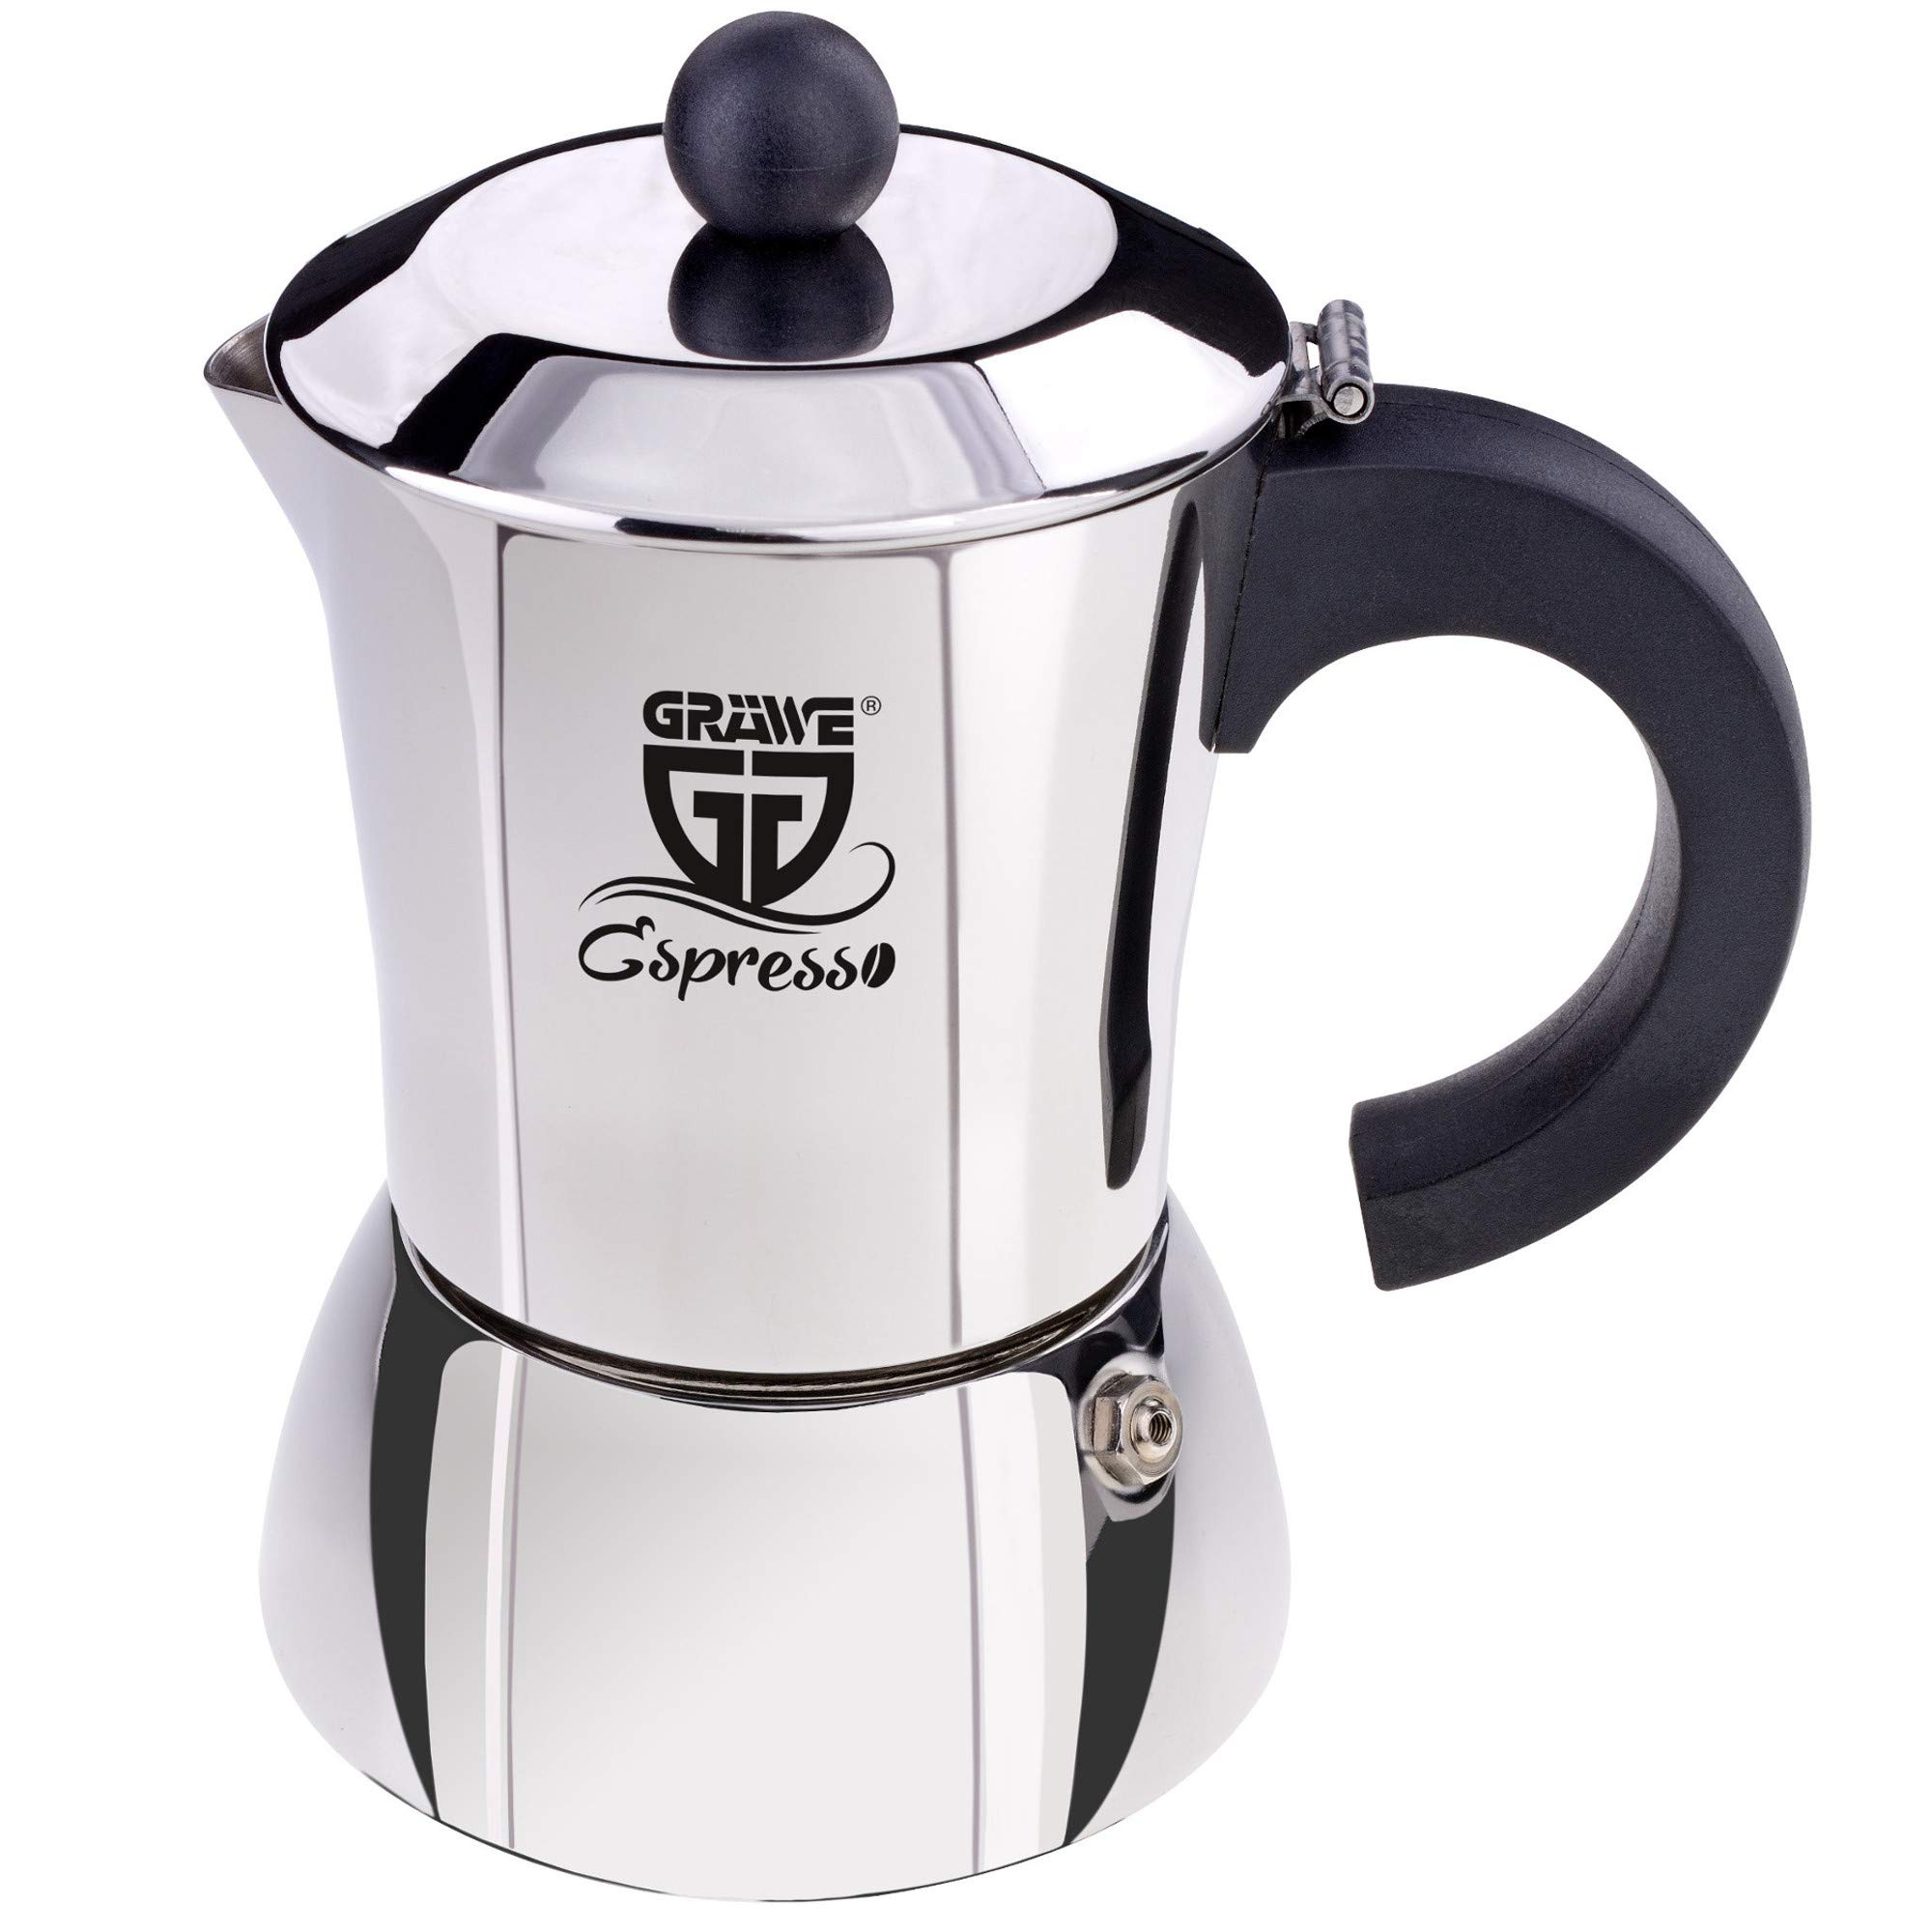 GRÄWE Espressokocher Induktion geeignet, Espressokanne aus Edelstahl für 10 Tassen, Klassischer Espresso Maker ohne Aluminium - 500 ml